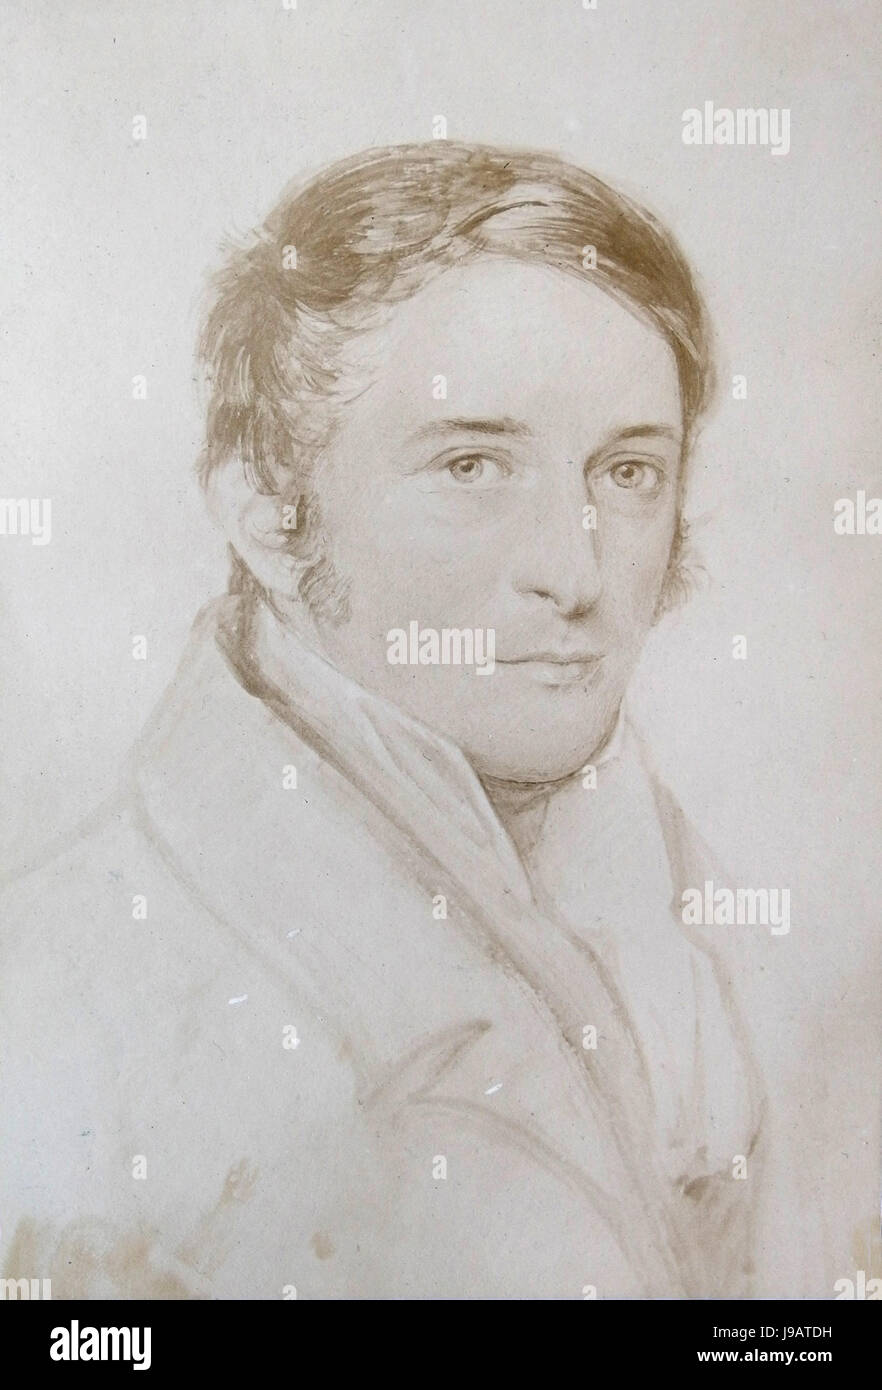 Professor von Martius (Carl Friedrich Philipp von Martius 1794 1868), painter August Grahl Stock Photo